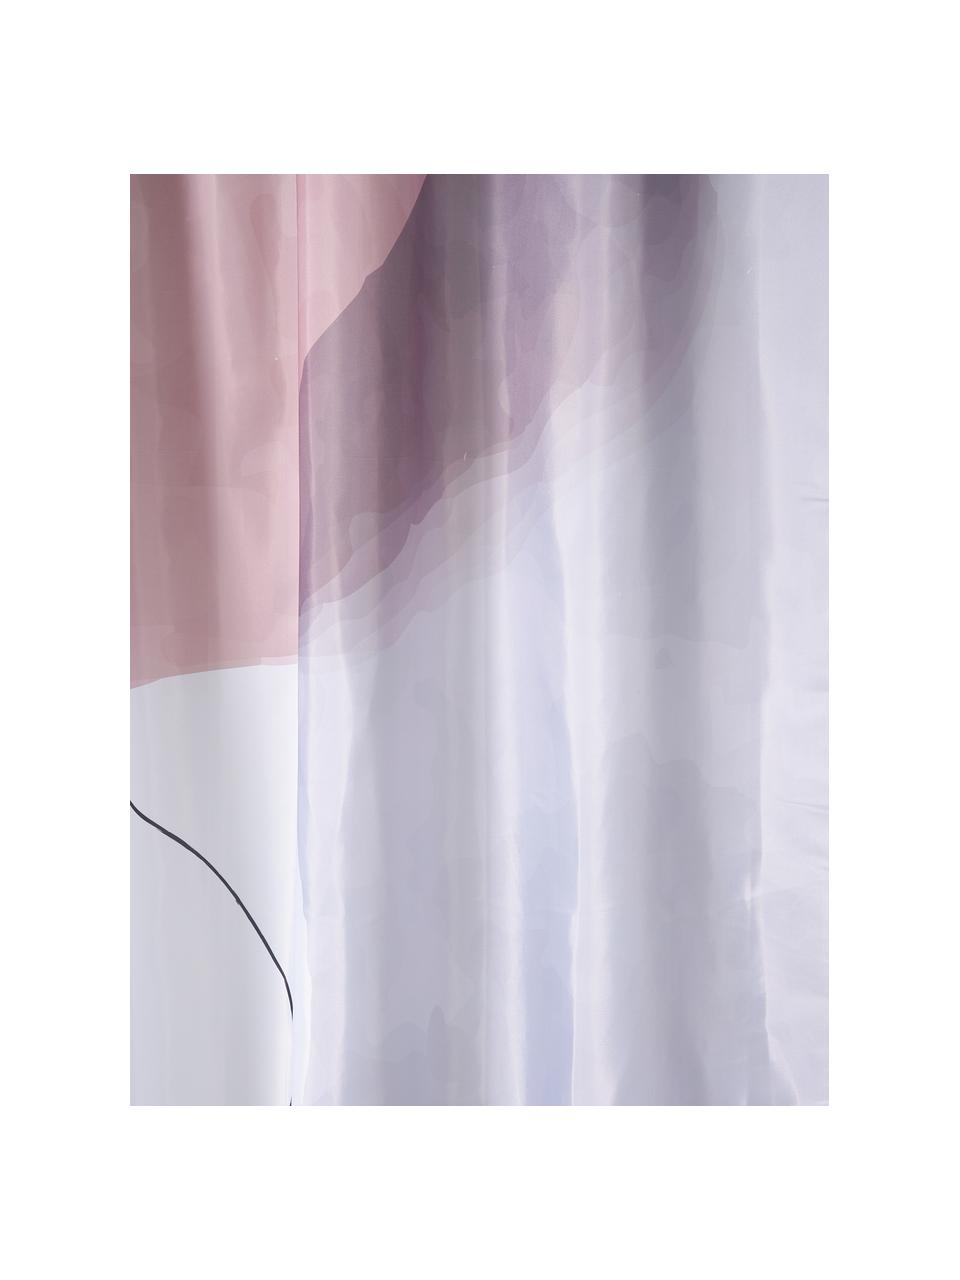 Duschvorhang Face mit One Line Zeichnung, 100% Polyester, Rosa, Weiß, Grau, Schwarz, B 180 x L 200 cm